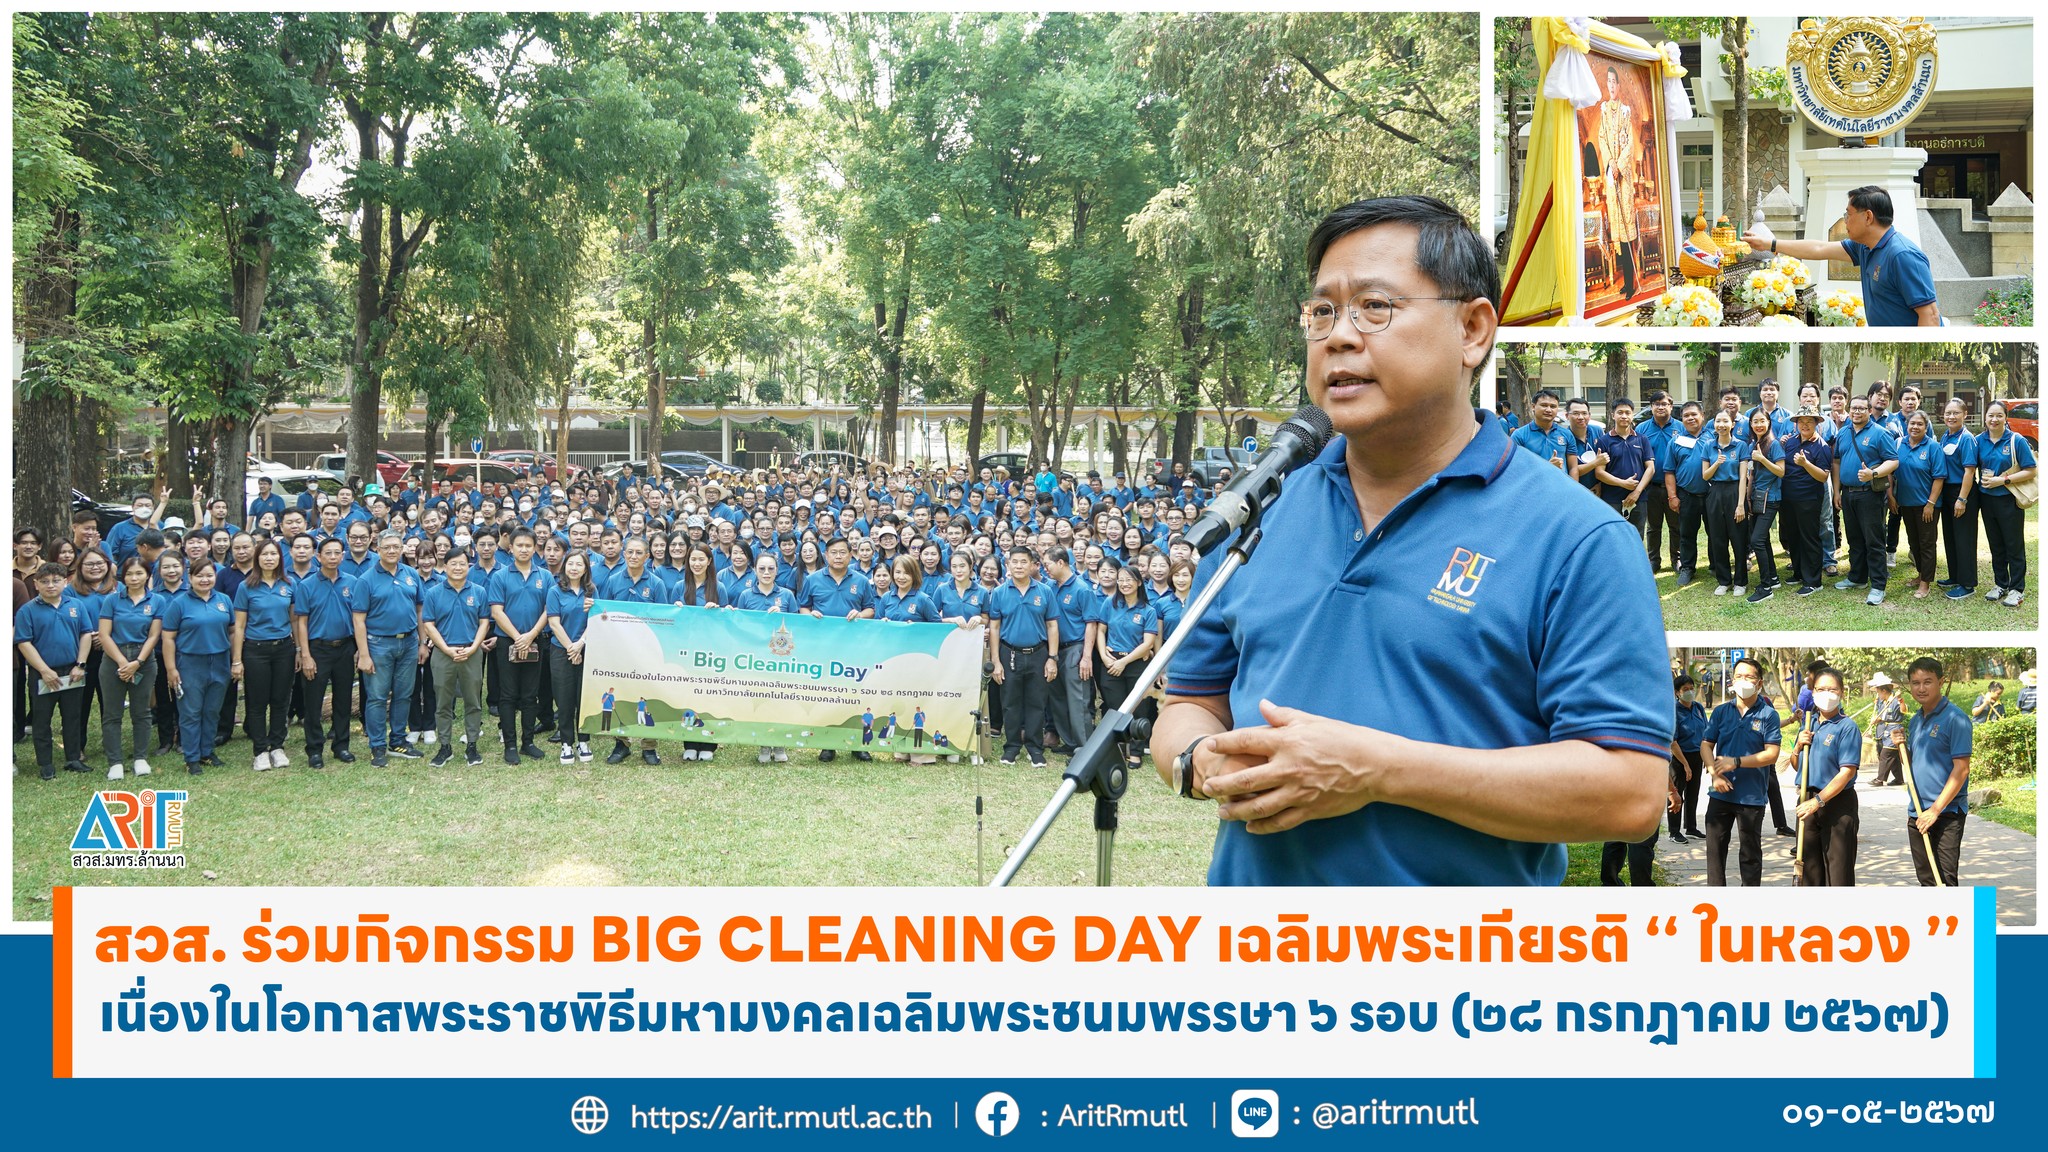 วมกิจกรรม Big Cleaning Day เฉลิมพระเกียรติ ‘’ ในหลวง ’’ เนื่องในโอกาสพระราชพิธีมหามงคลเฉลิมพระชนมพรรษา ๖ รอบ (๒๘ กรกฎาคม ๒๕๖๗)